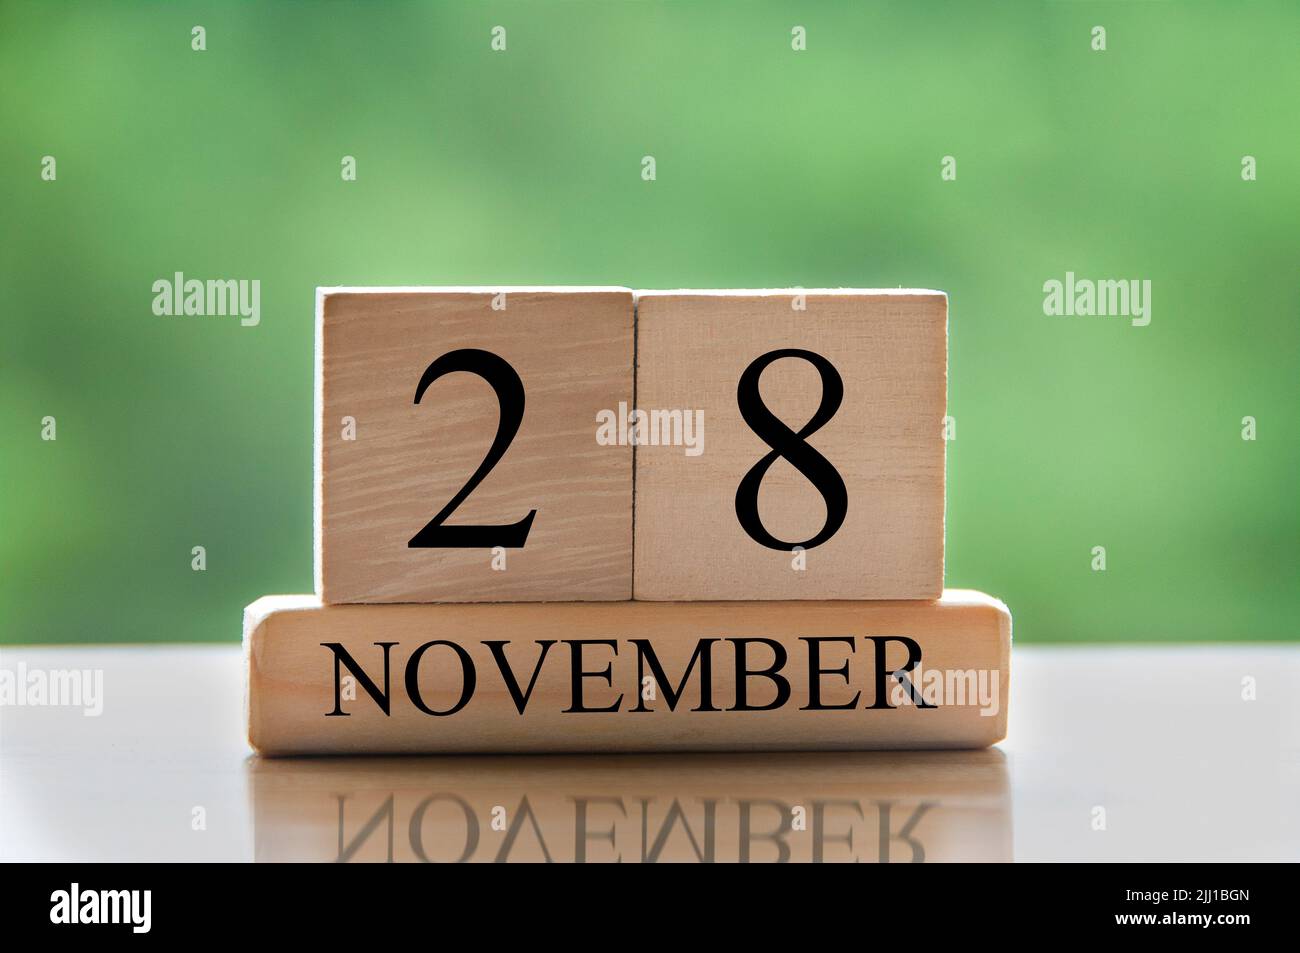 28 novembre Banque de photographies et d'images à haute résolution - Alamy